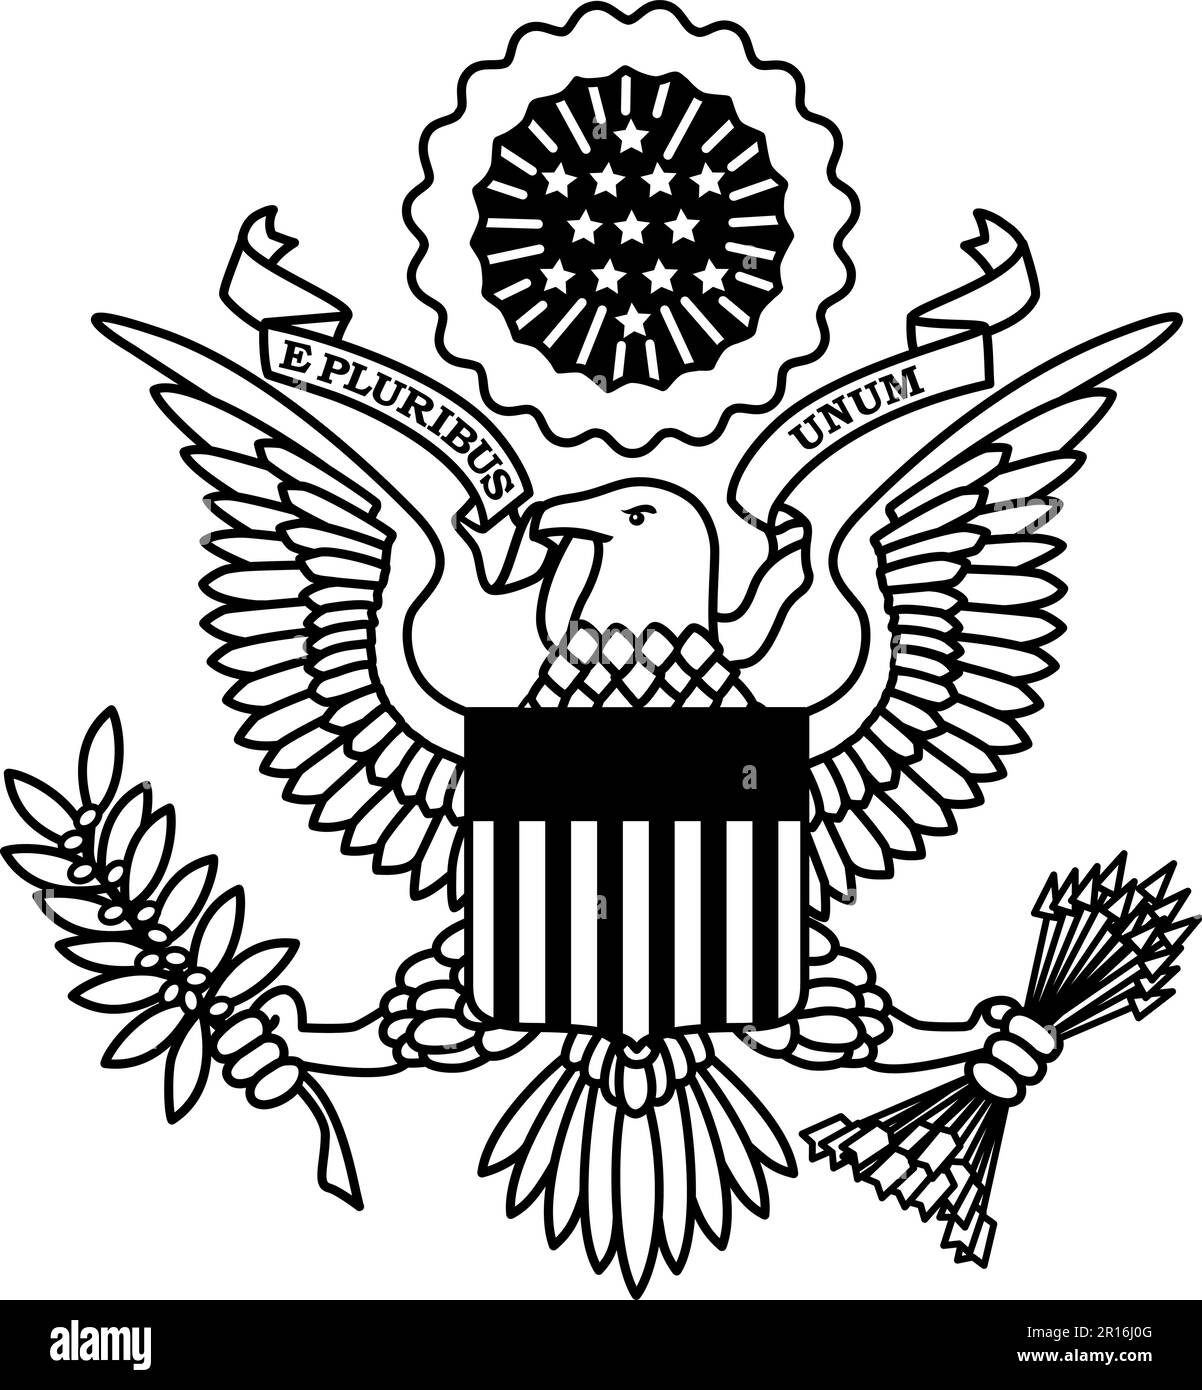 Great Seal of the United States of America; 1/c Black Line Art. Plotter, Vinylschneider-sicher – geschlossene, flache Formen, keine Überschneidungen, keine Mischungen. Stock Vektor